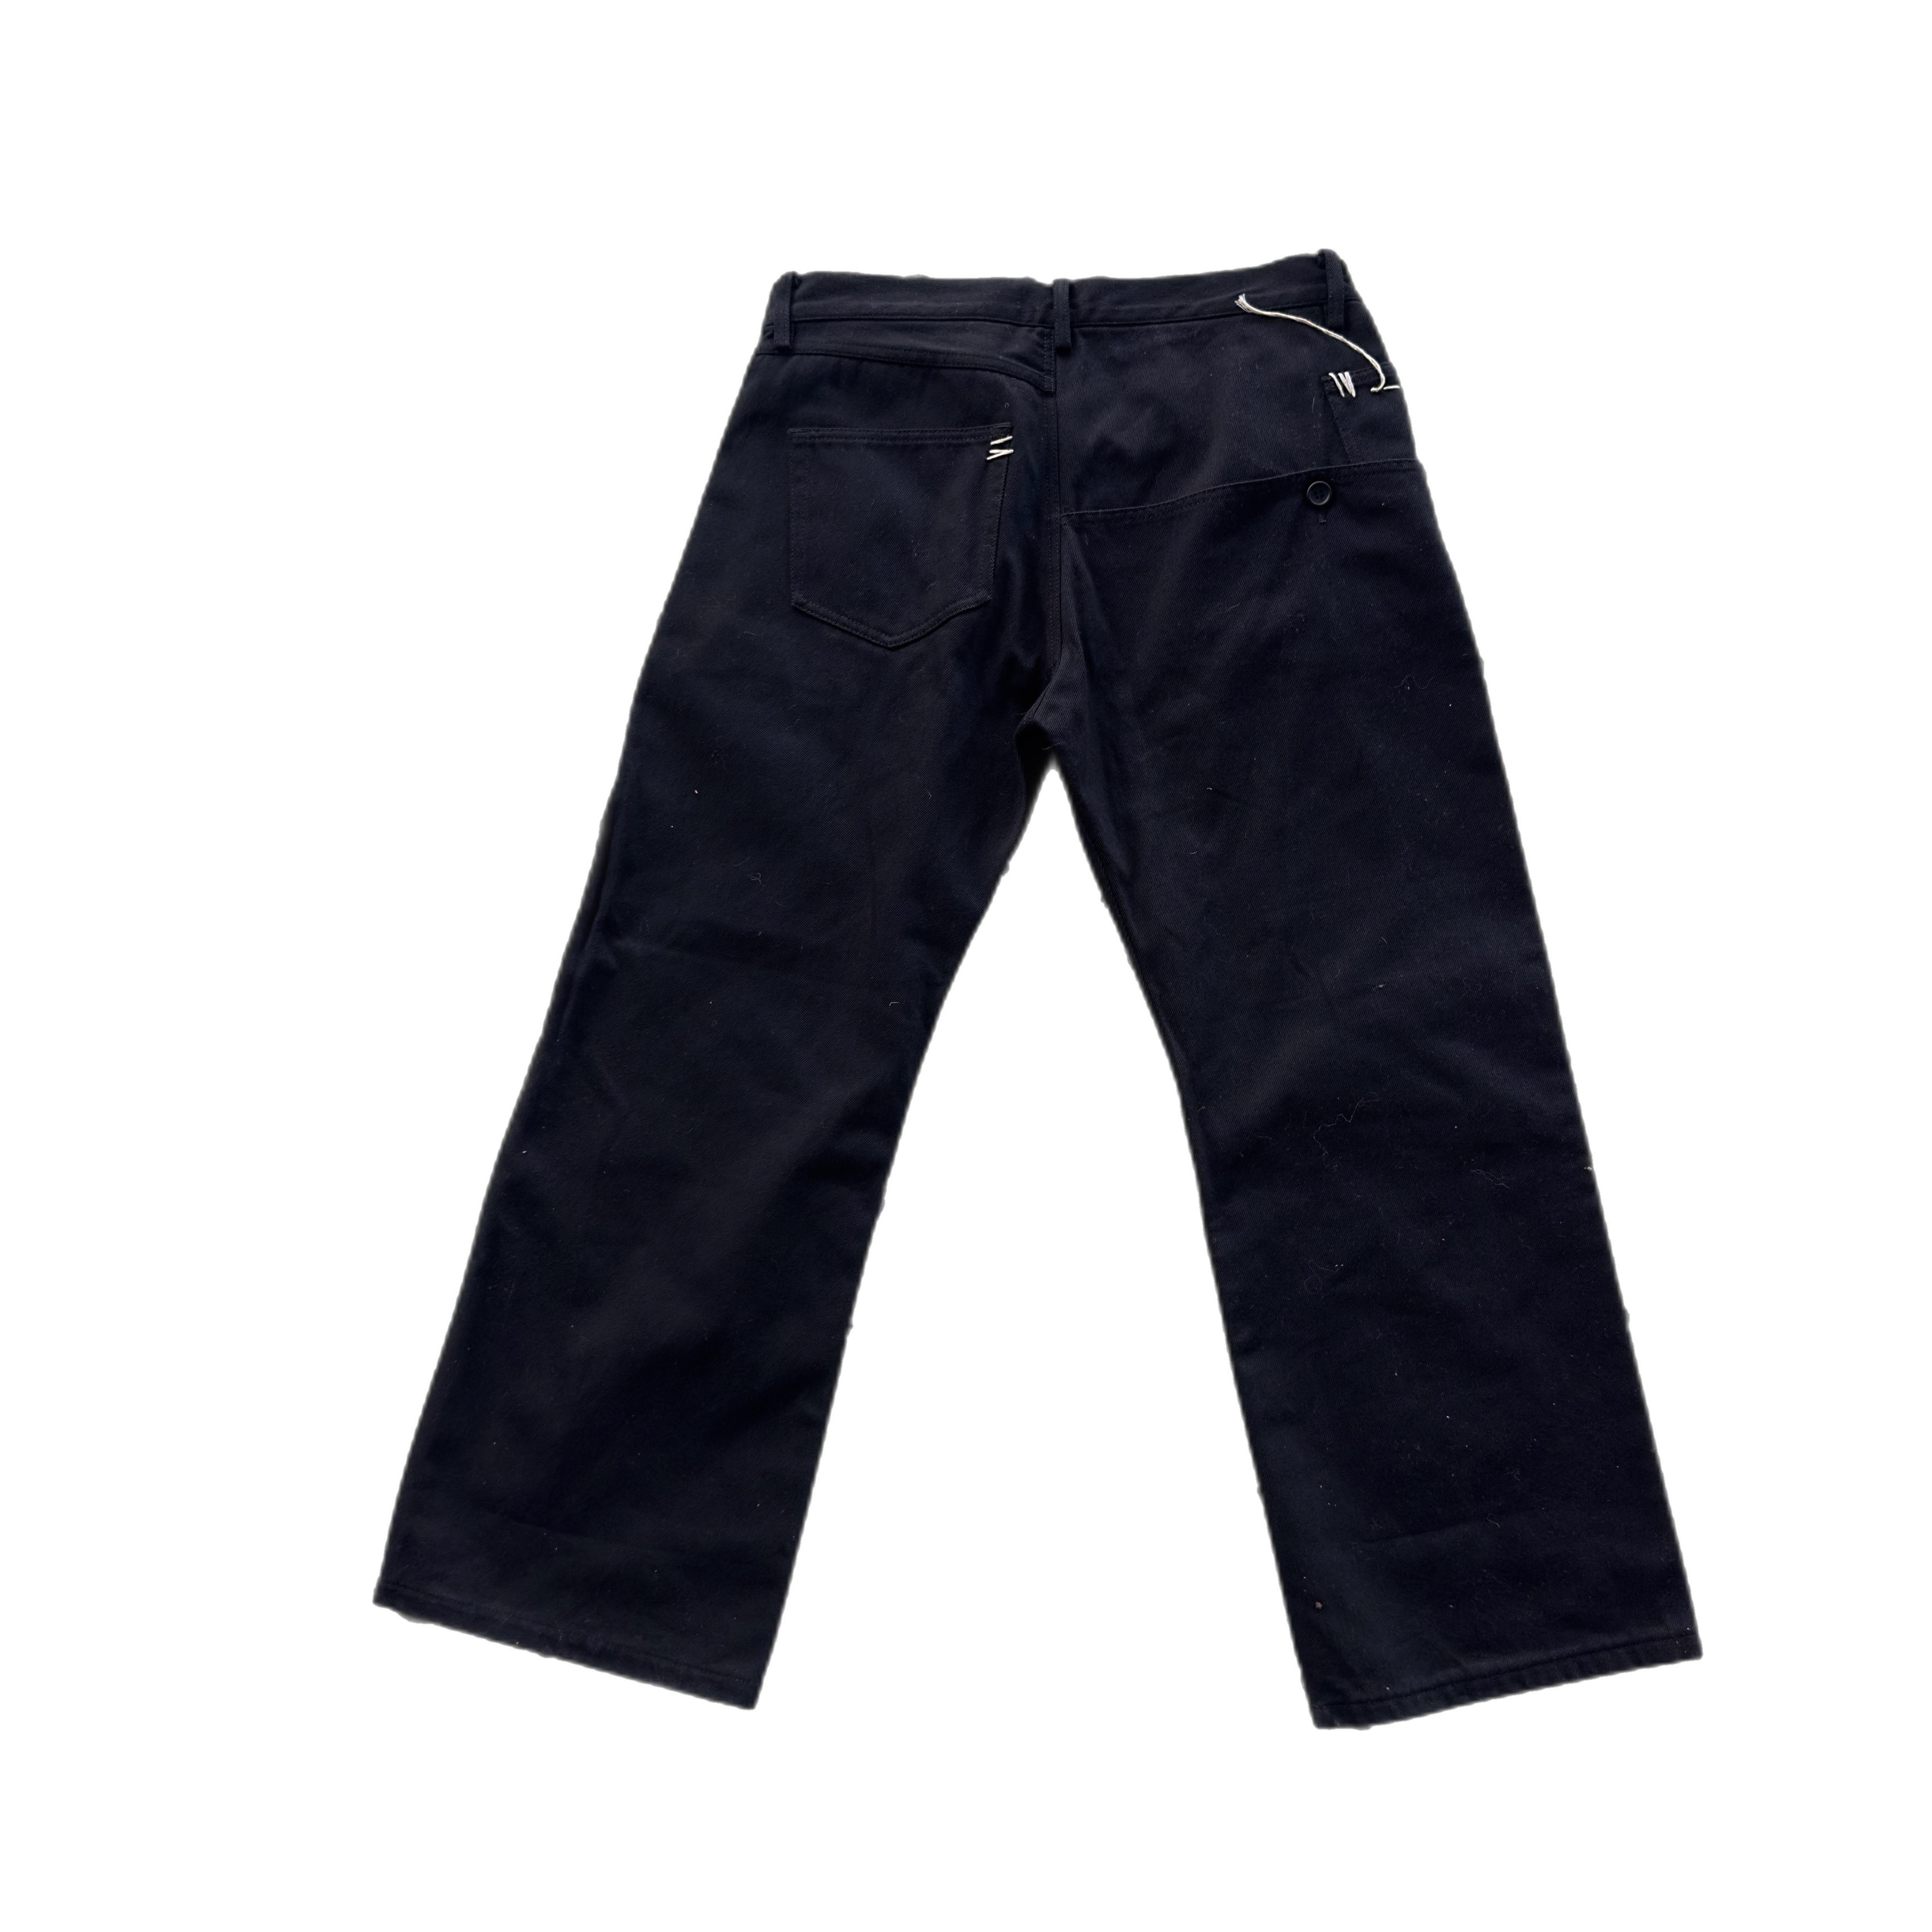 Jeans a gamba larga Y's Yohji Yamamoto in denim nero anni '90
Tasconi sul retro con dettagli impunture bianchi
Misure :
VITA 44cm
Fianchi 55cm
Gamba 31cm
Lunghezza 100cm